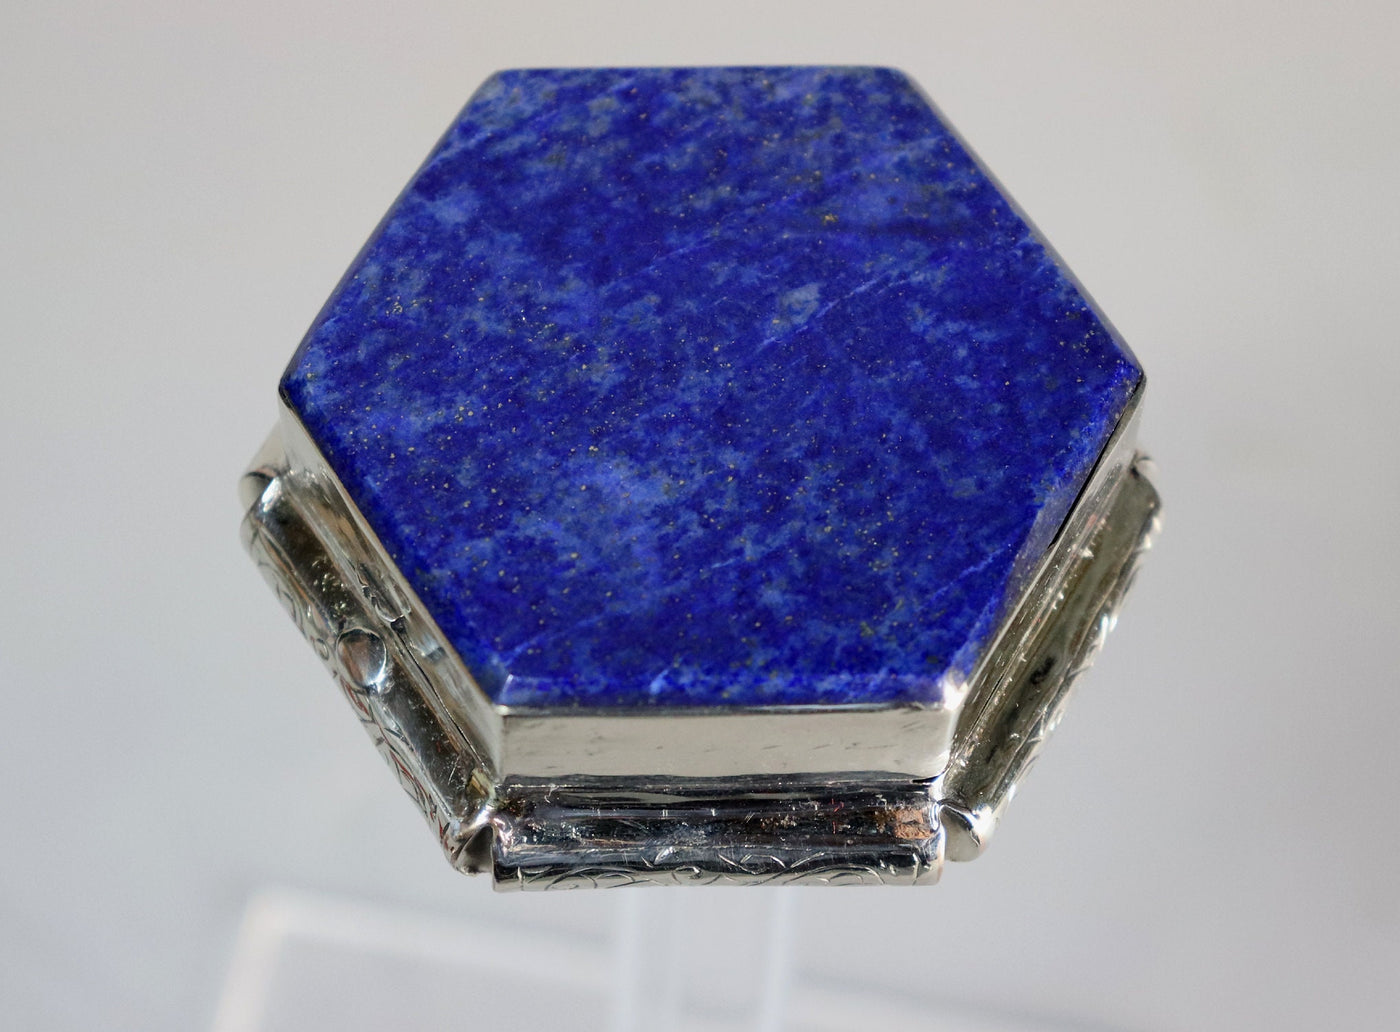 Extravagant handgefertigte messing   Lapis lazuli -Edelstein büchse Schmuck Dose schatulle Kiste schmuckkiste Afghanistan  Nr-IT54-63  Orientsbazar   